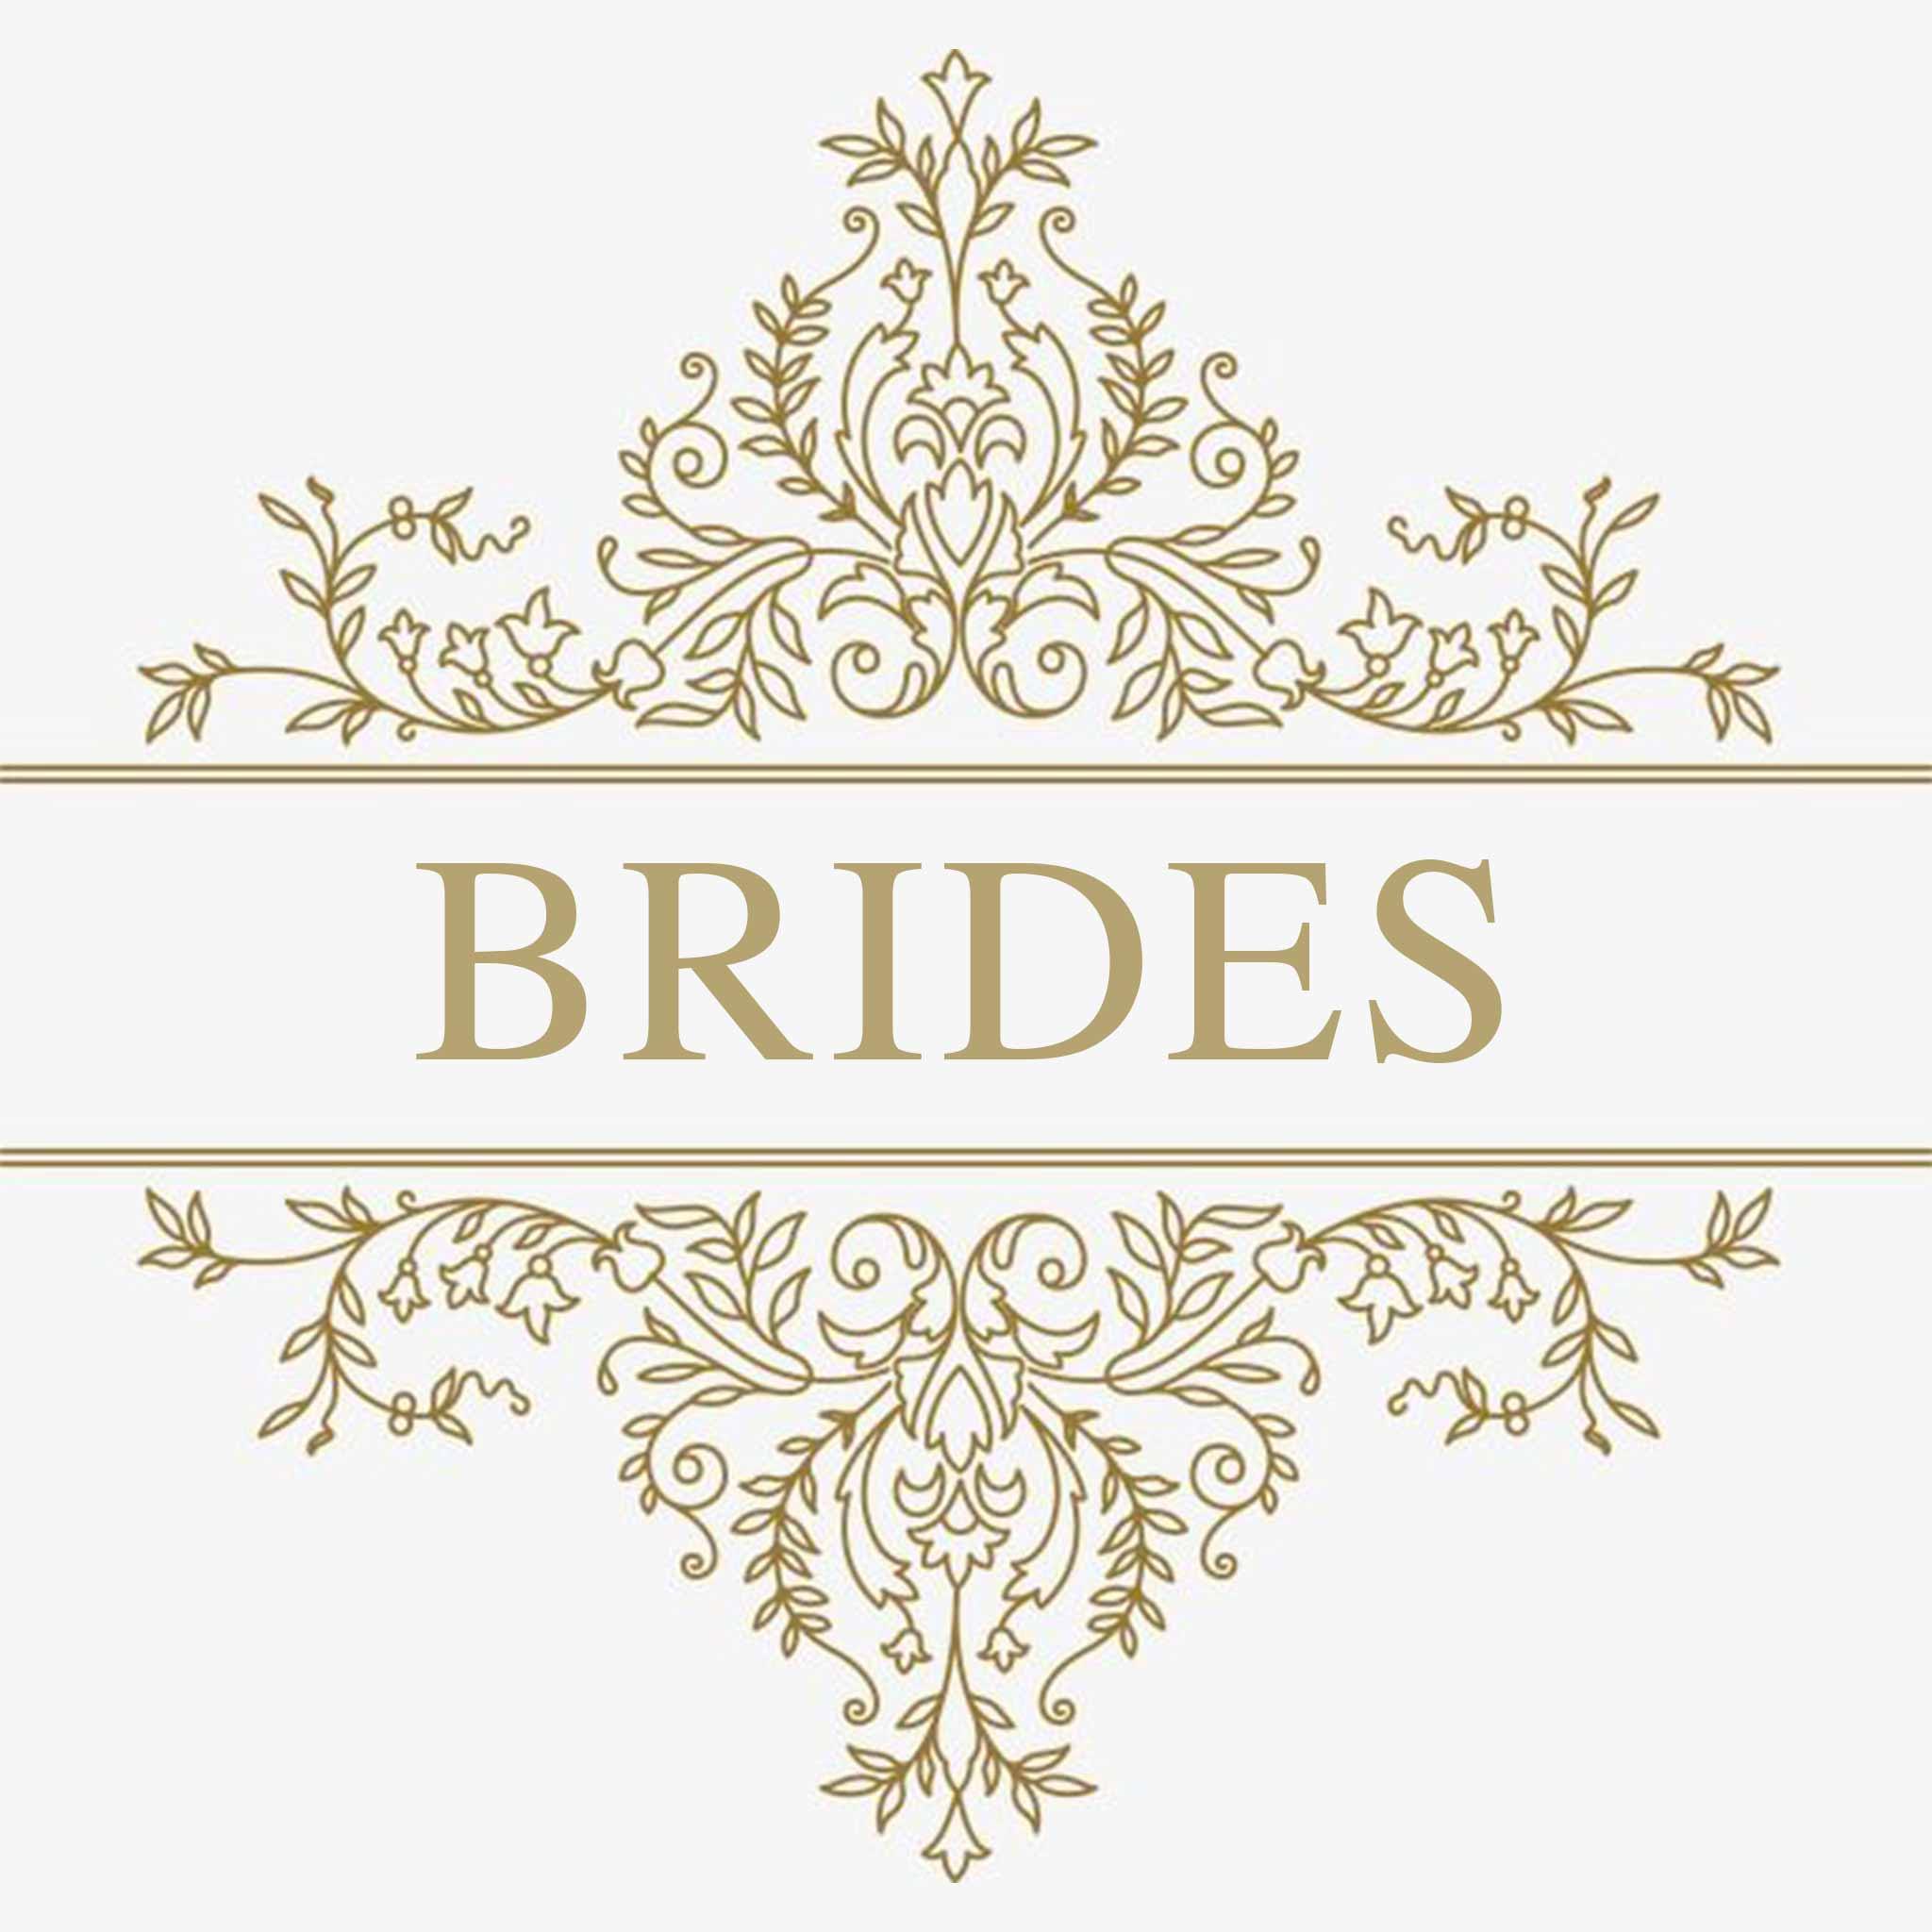 Brides | Customly Gifts